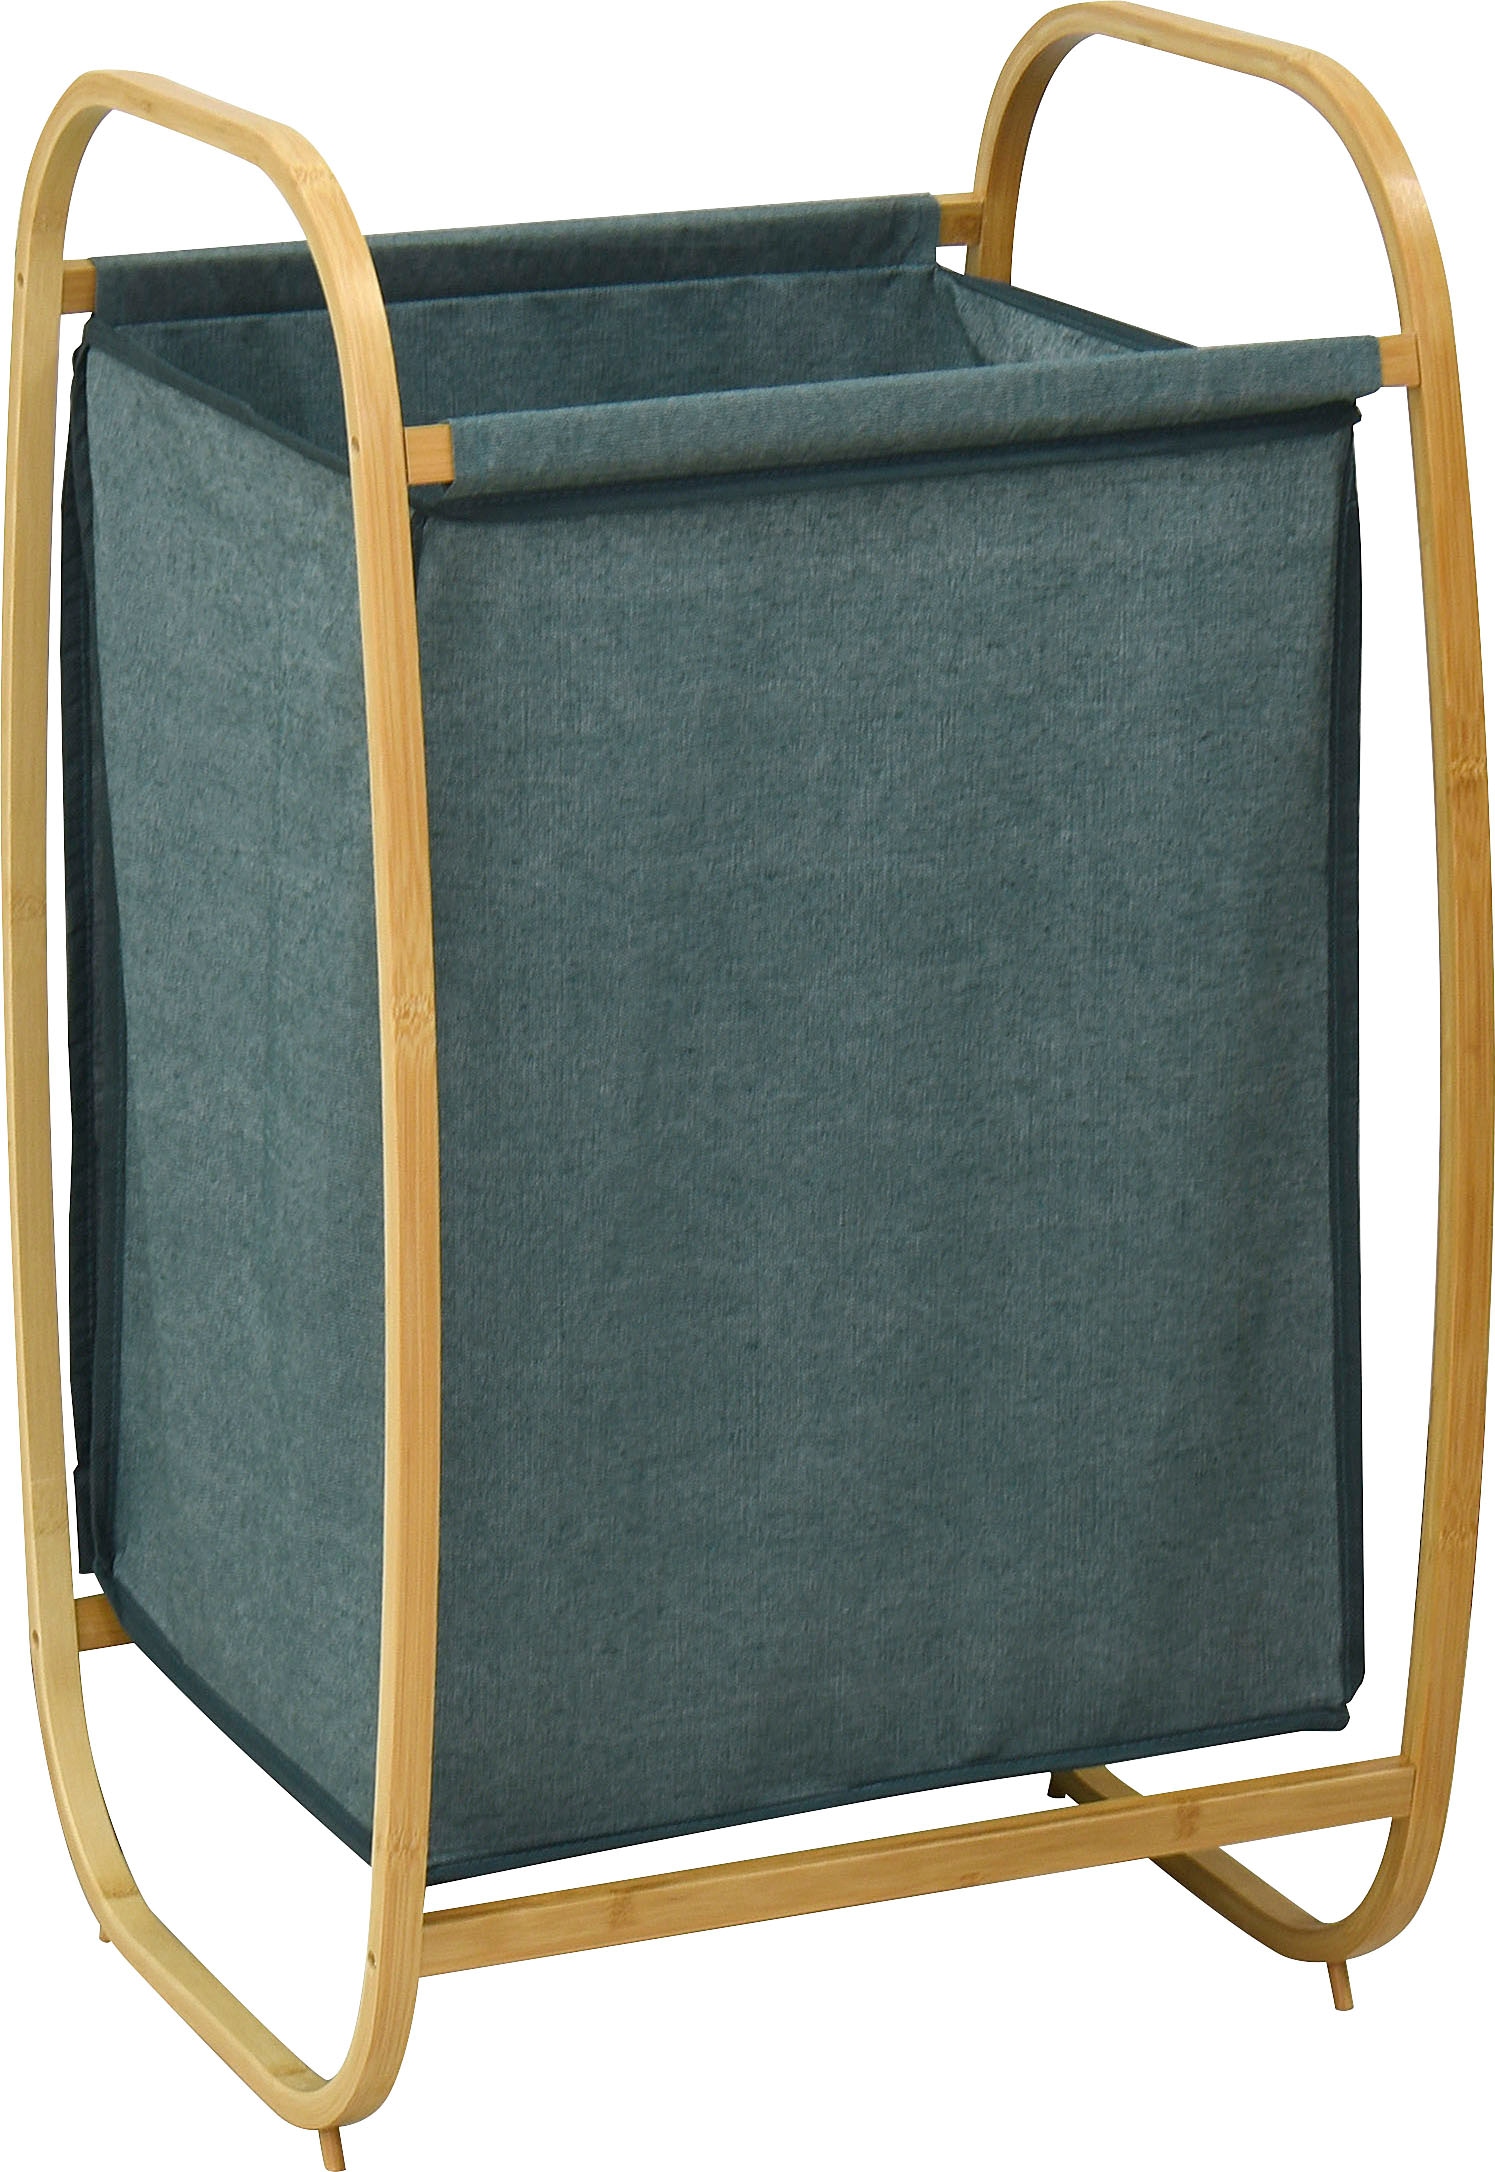 welltime Wäschekorb »Costa Rica«, Breite 43 cm, Wäschesortierer aus Bambus, Wäschesack mit Deckel